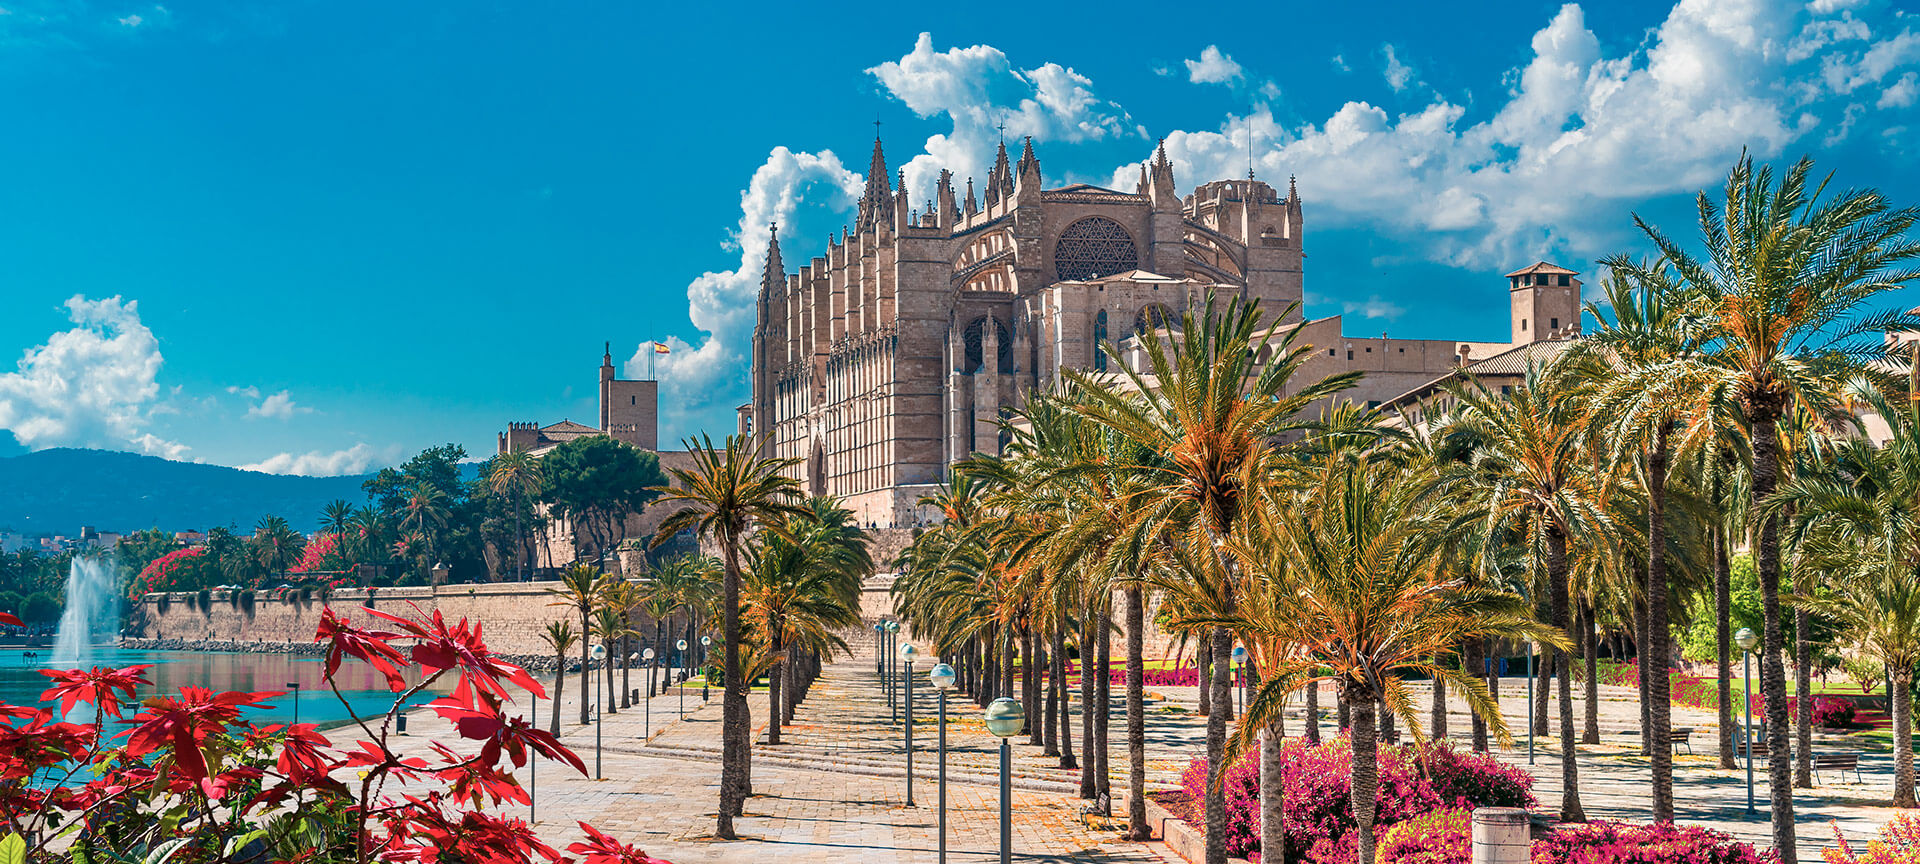 Les 10 Monuments Les Plus Visites D Espagne Spain Info En Francais